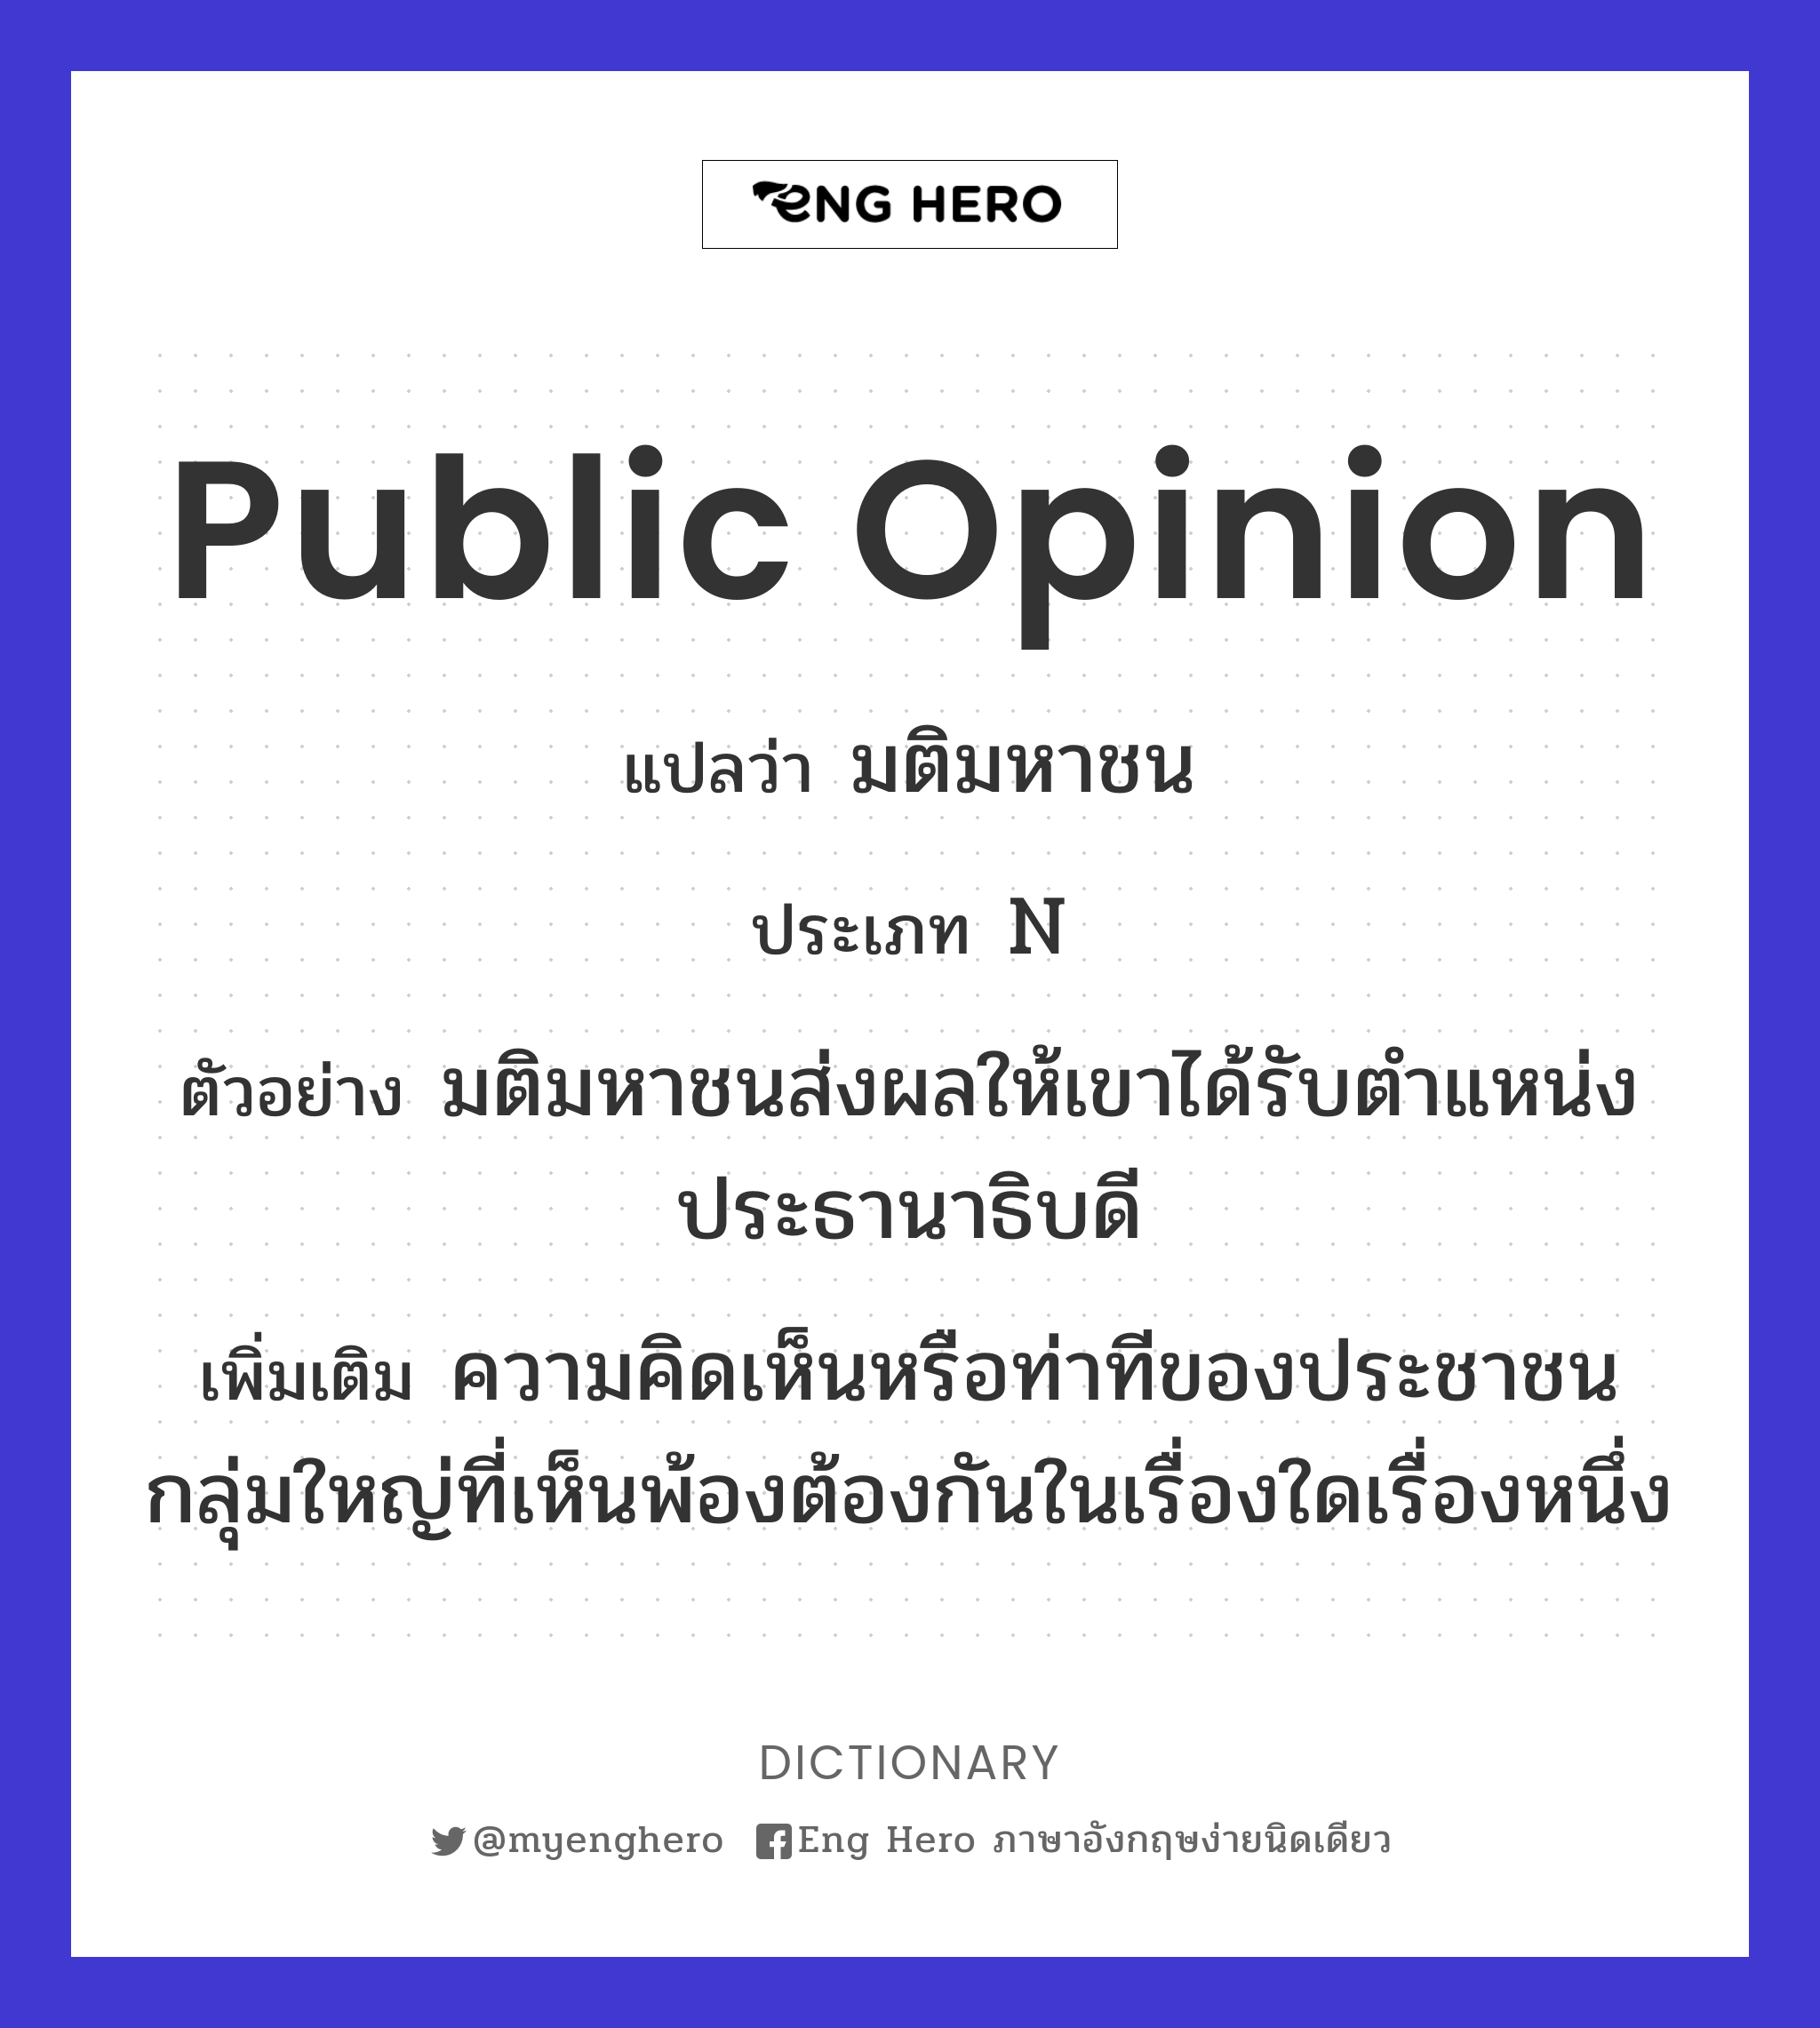 public opinion